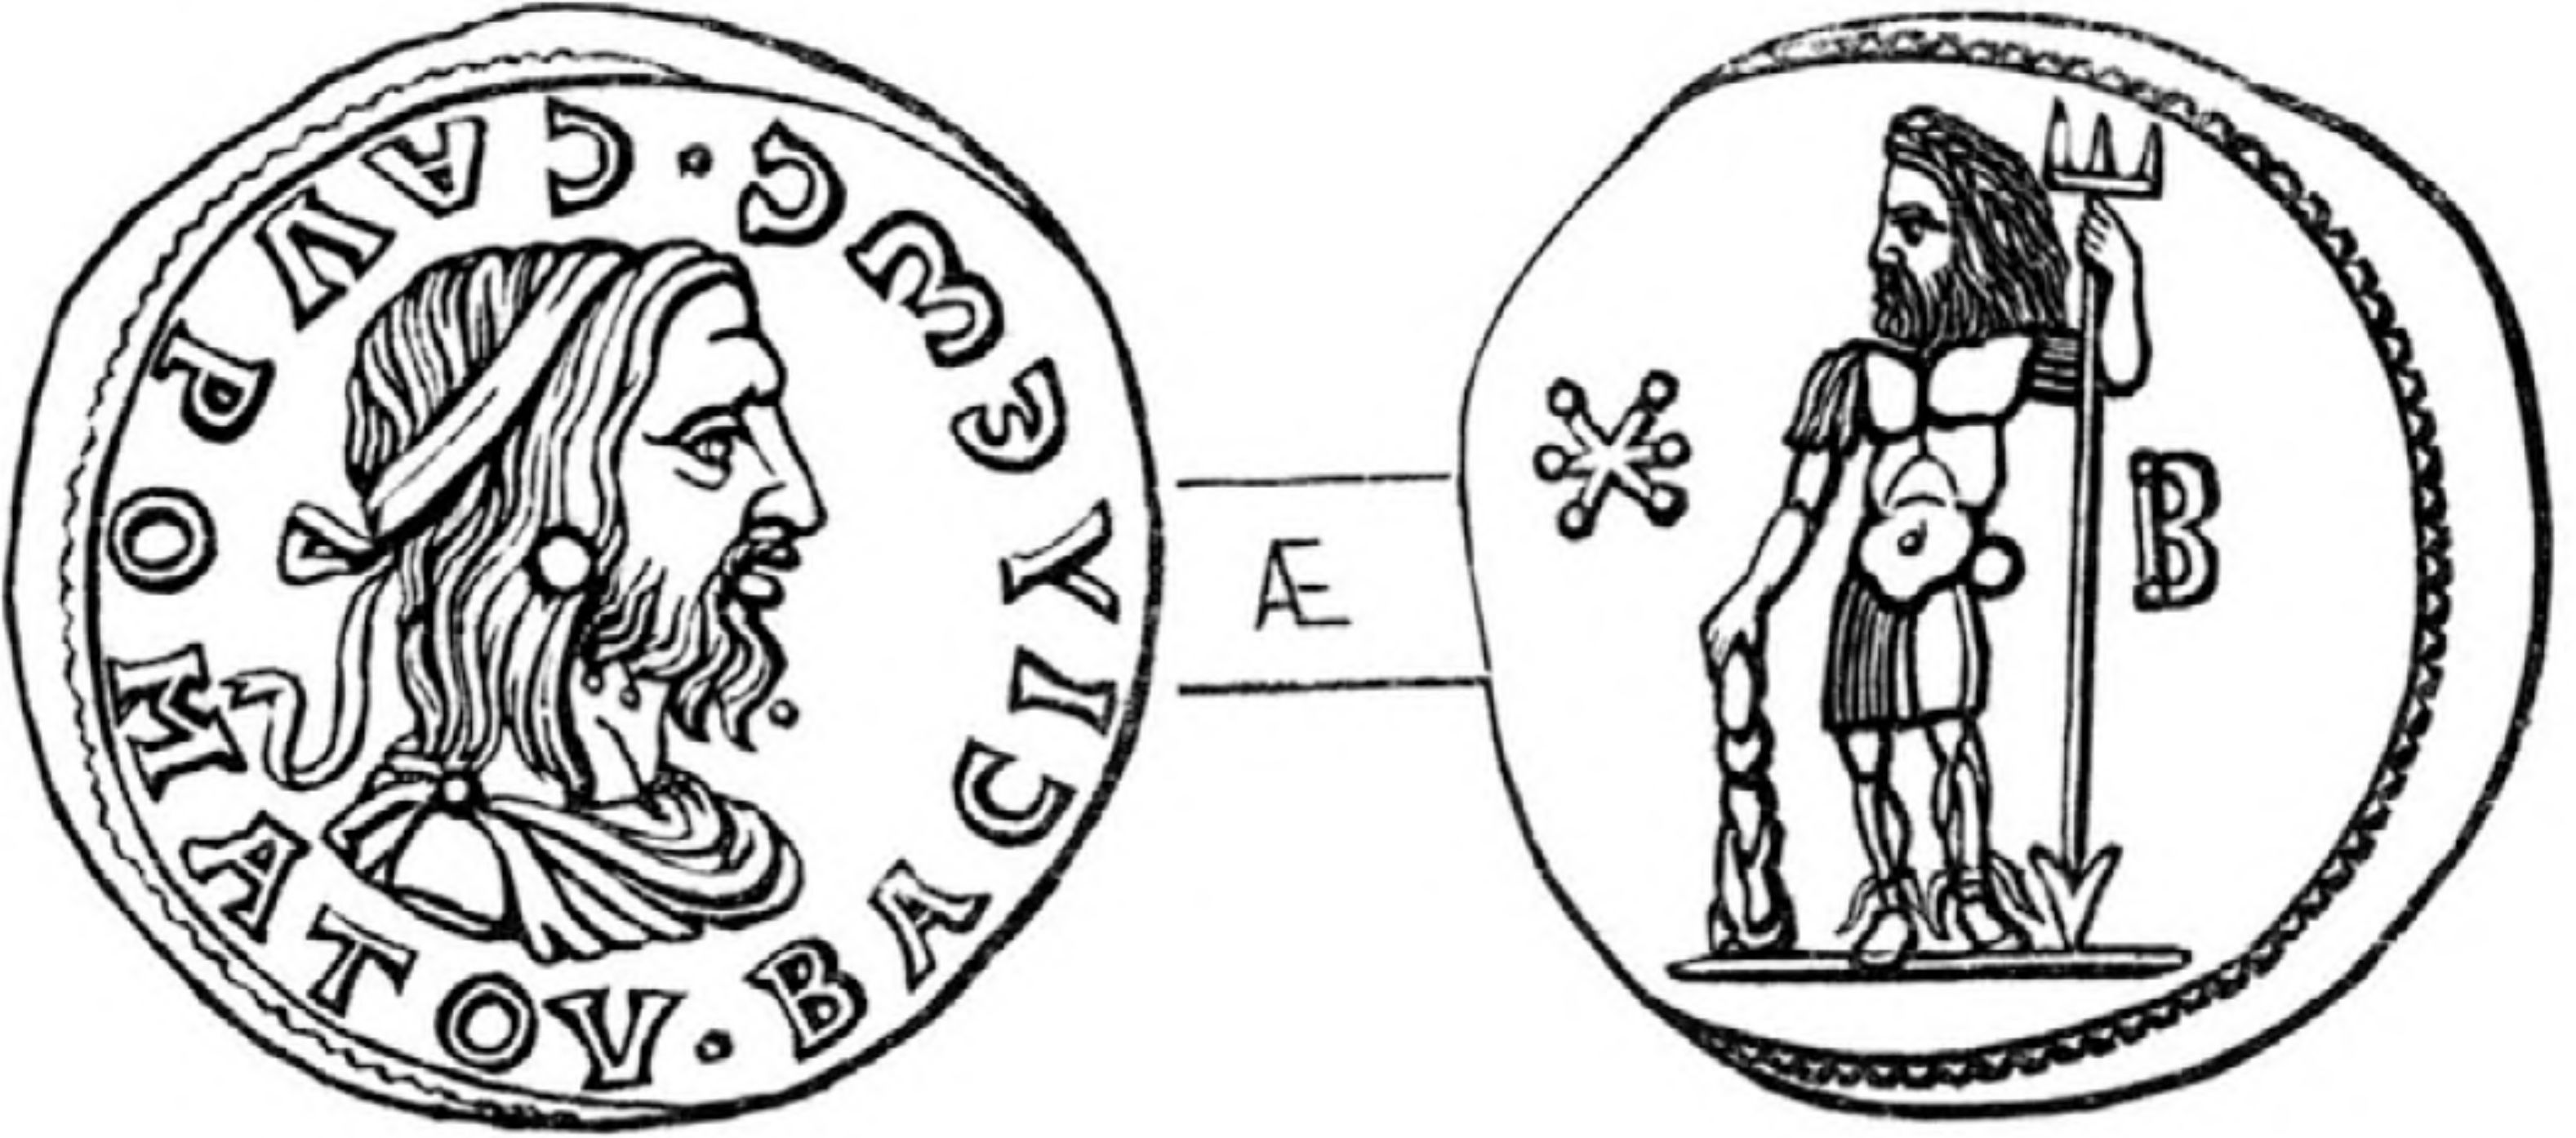 Рис. 130. Двойной динарий царя Савромата II, где он изображен с атрибутами Геракла и Посейдона (по П.О. Бурачкову)